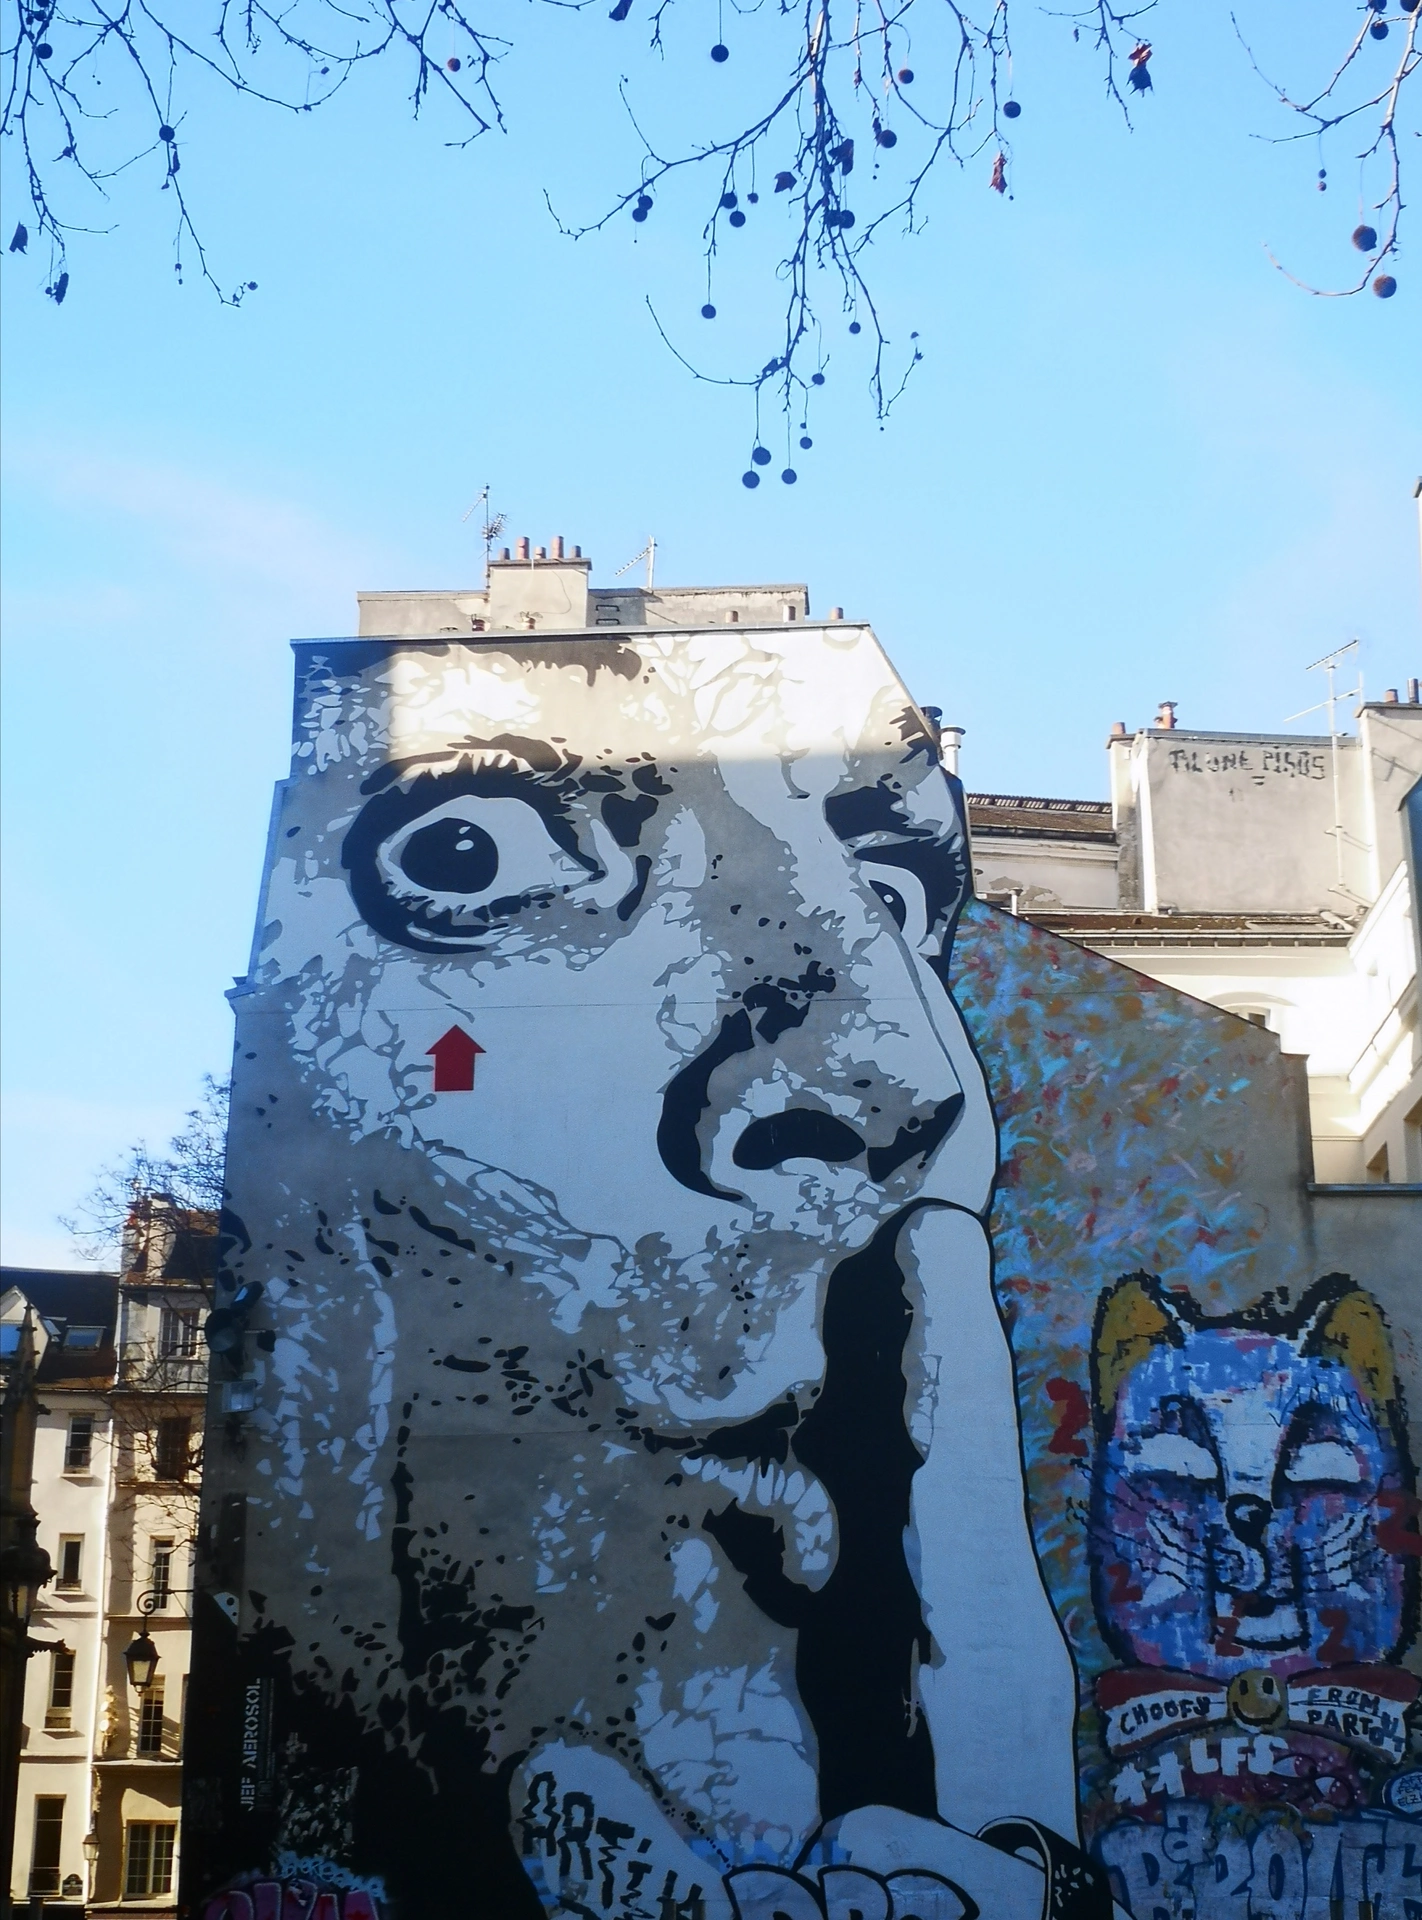 Oeuvre de Street Art réalisée par Jef Aérosol à Paris